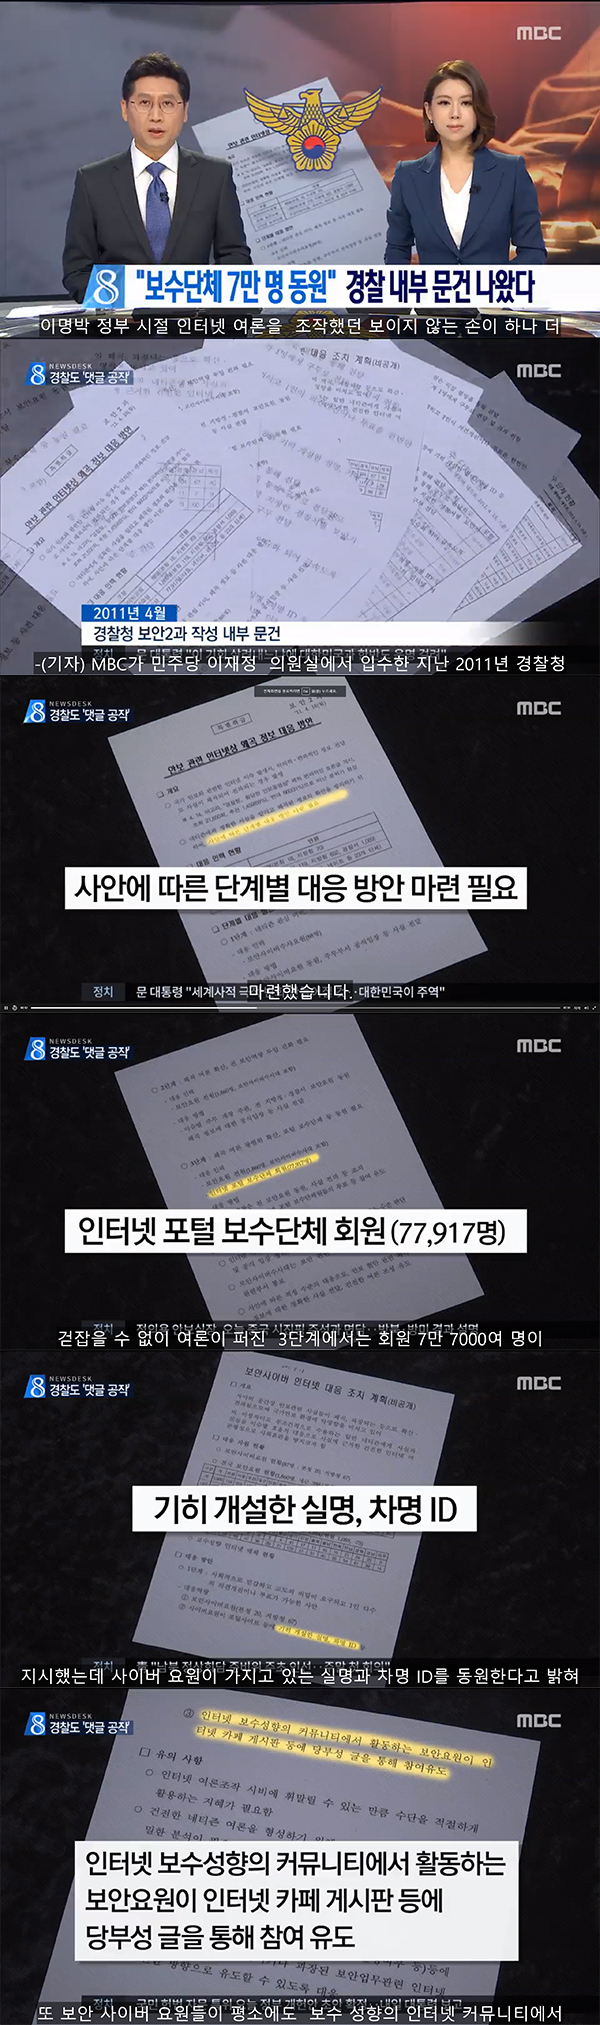 보수단체 7만명을 동원하겠다는 경찰 댓글 공작 사건 / MBC